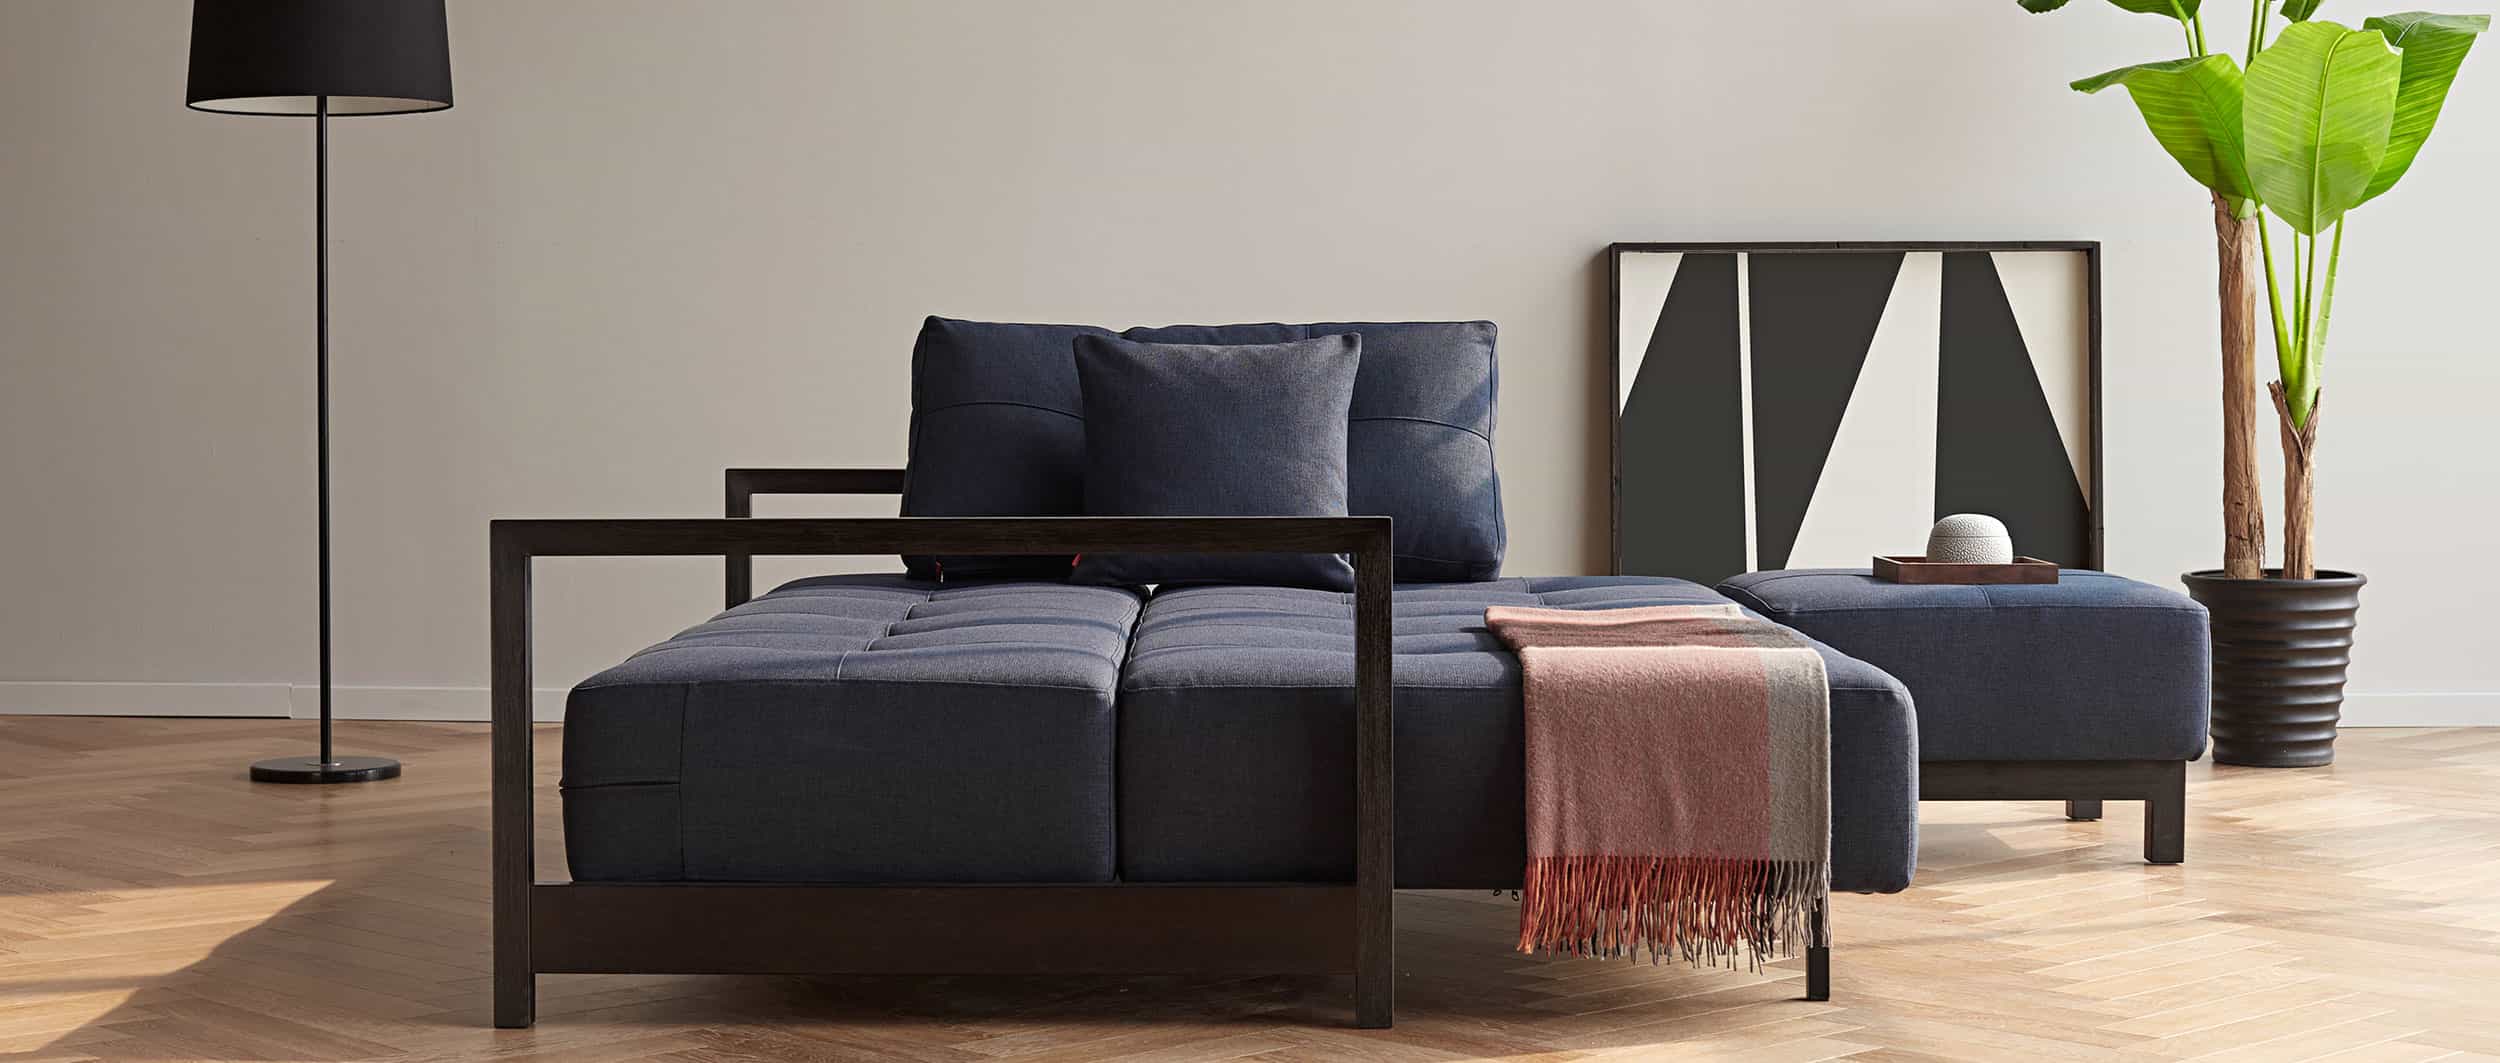 BIFROST DELUXE EXCESS Schlafsofa von Innovation mit schwarzen Armlehnen aus Holz, Lounge Sofa mit Hocker - Liegefläche 155x200